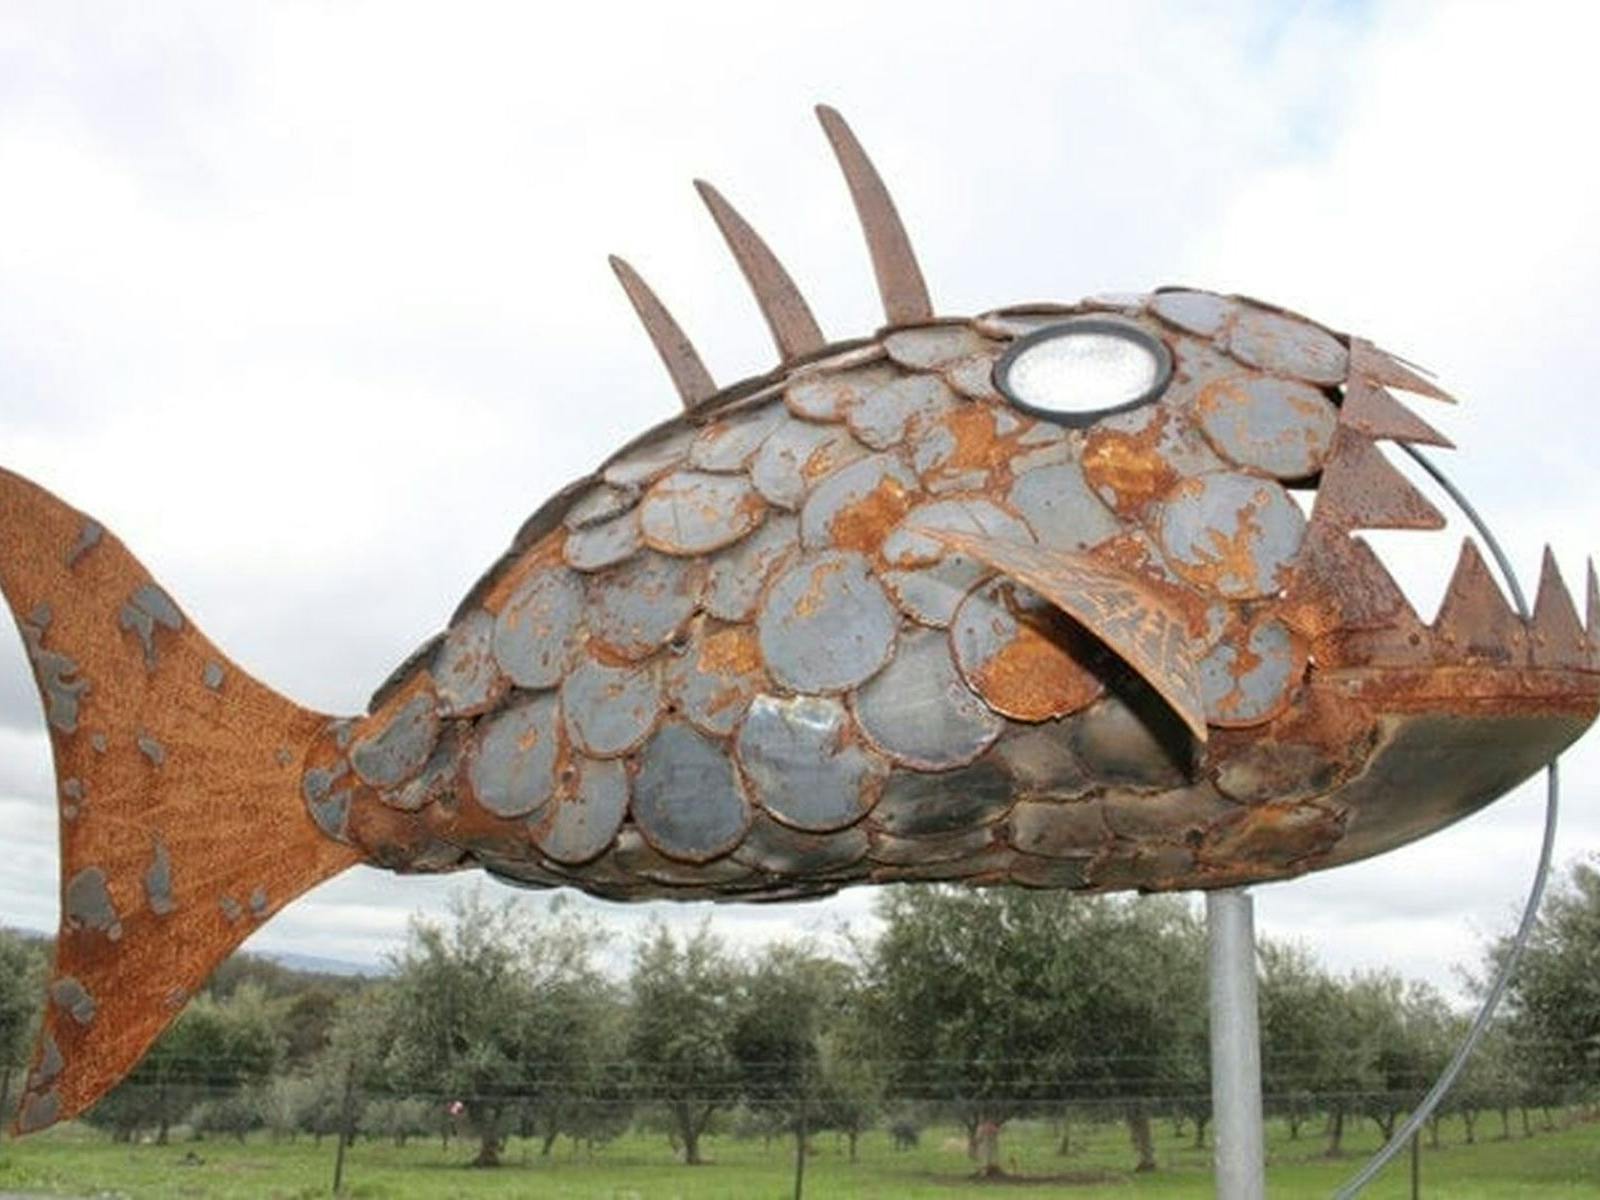 The Angler Fish